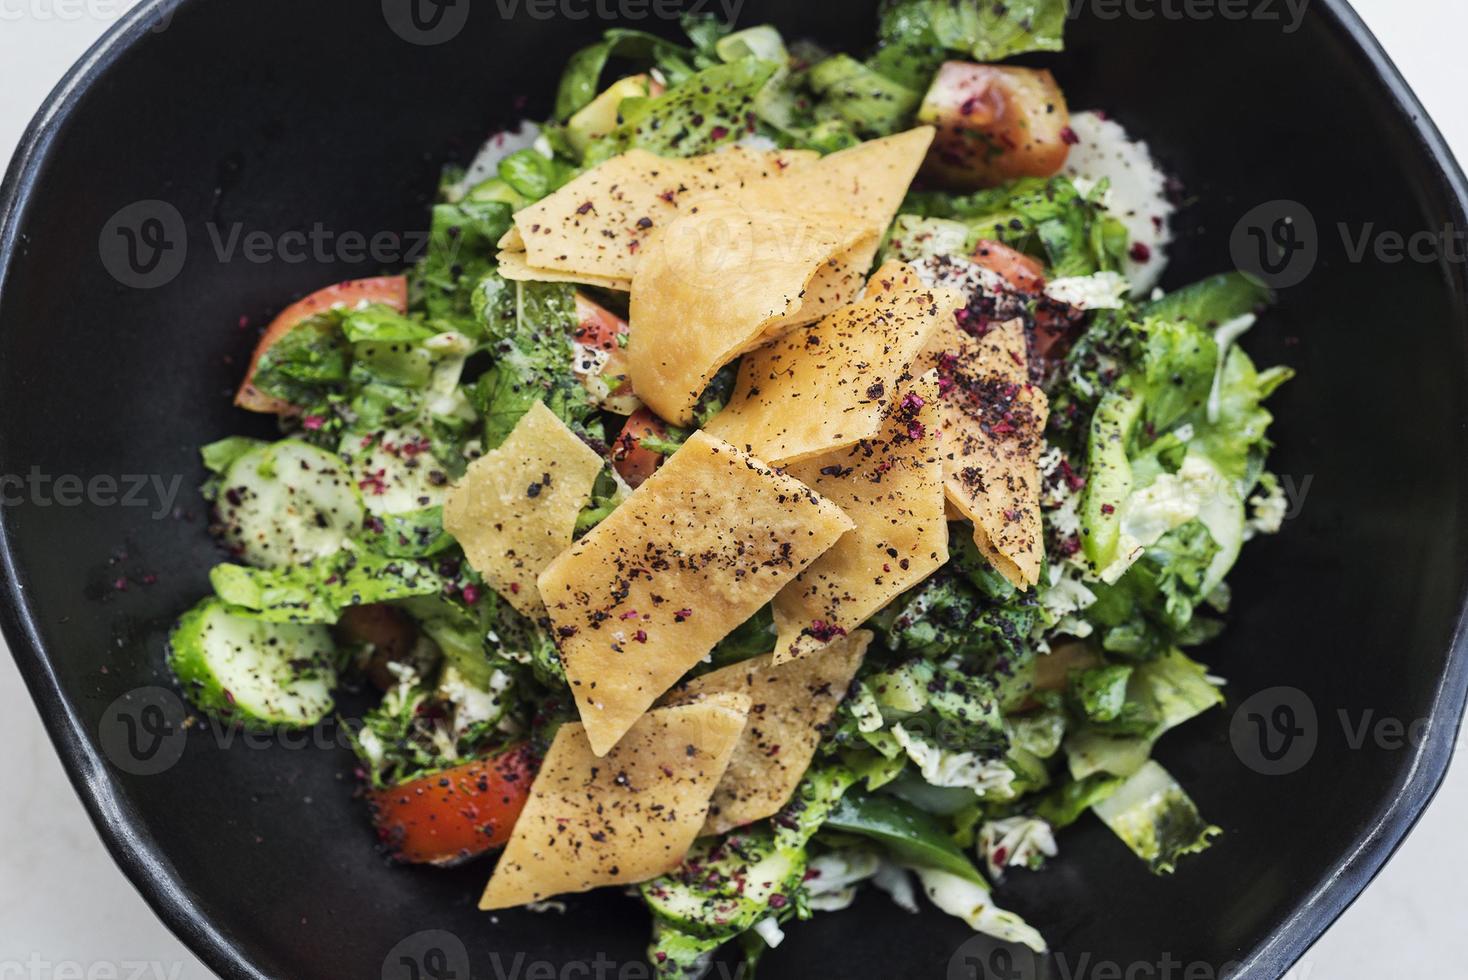 fatoush traditionele klassieke beroemde Libanese salade uit het Midden-Oosten? foto